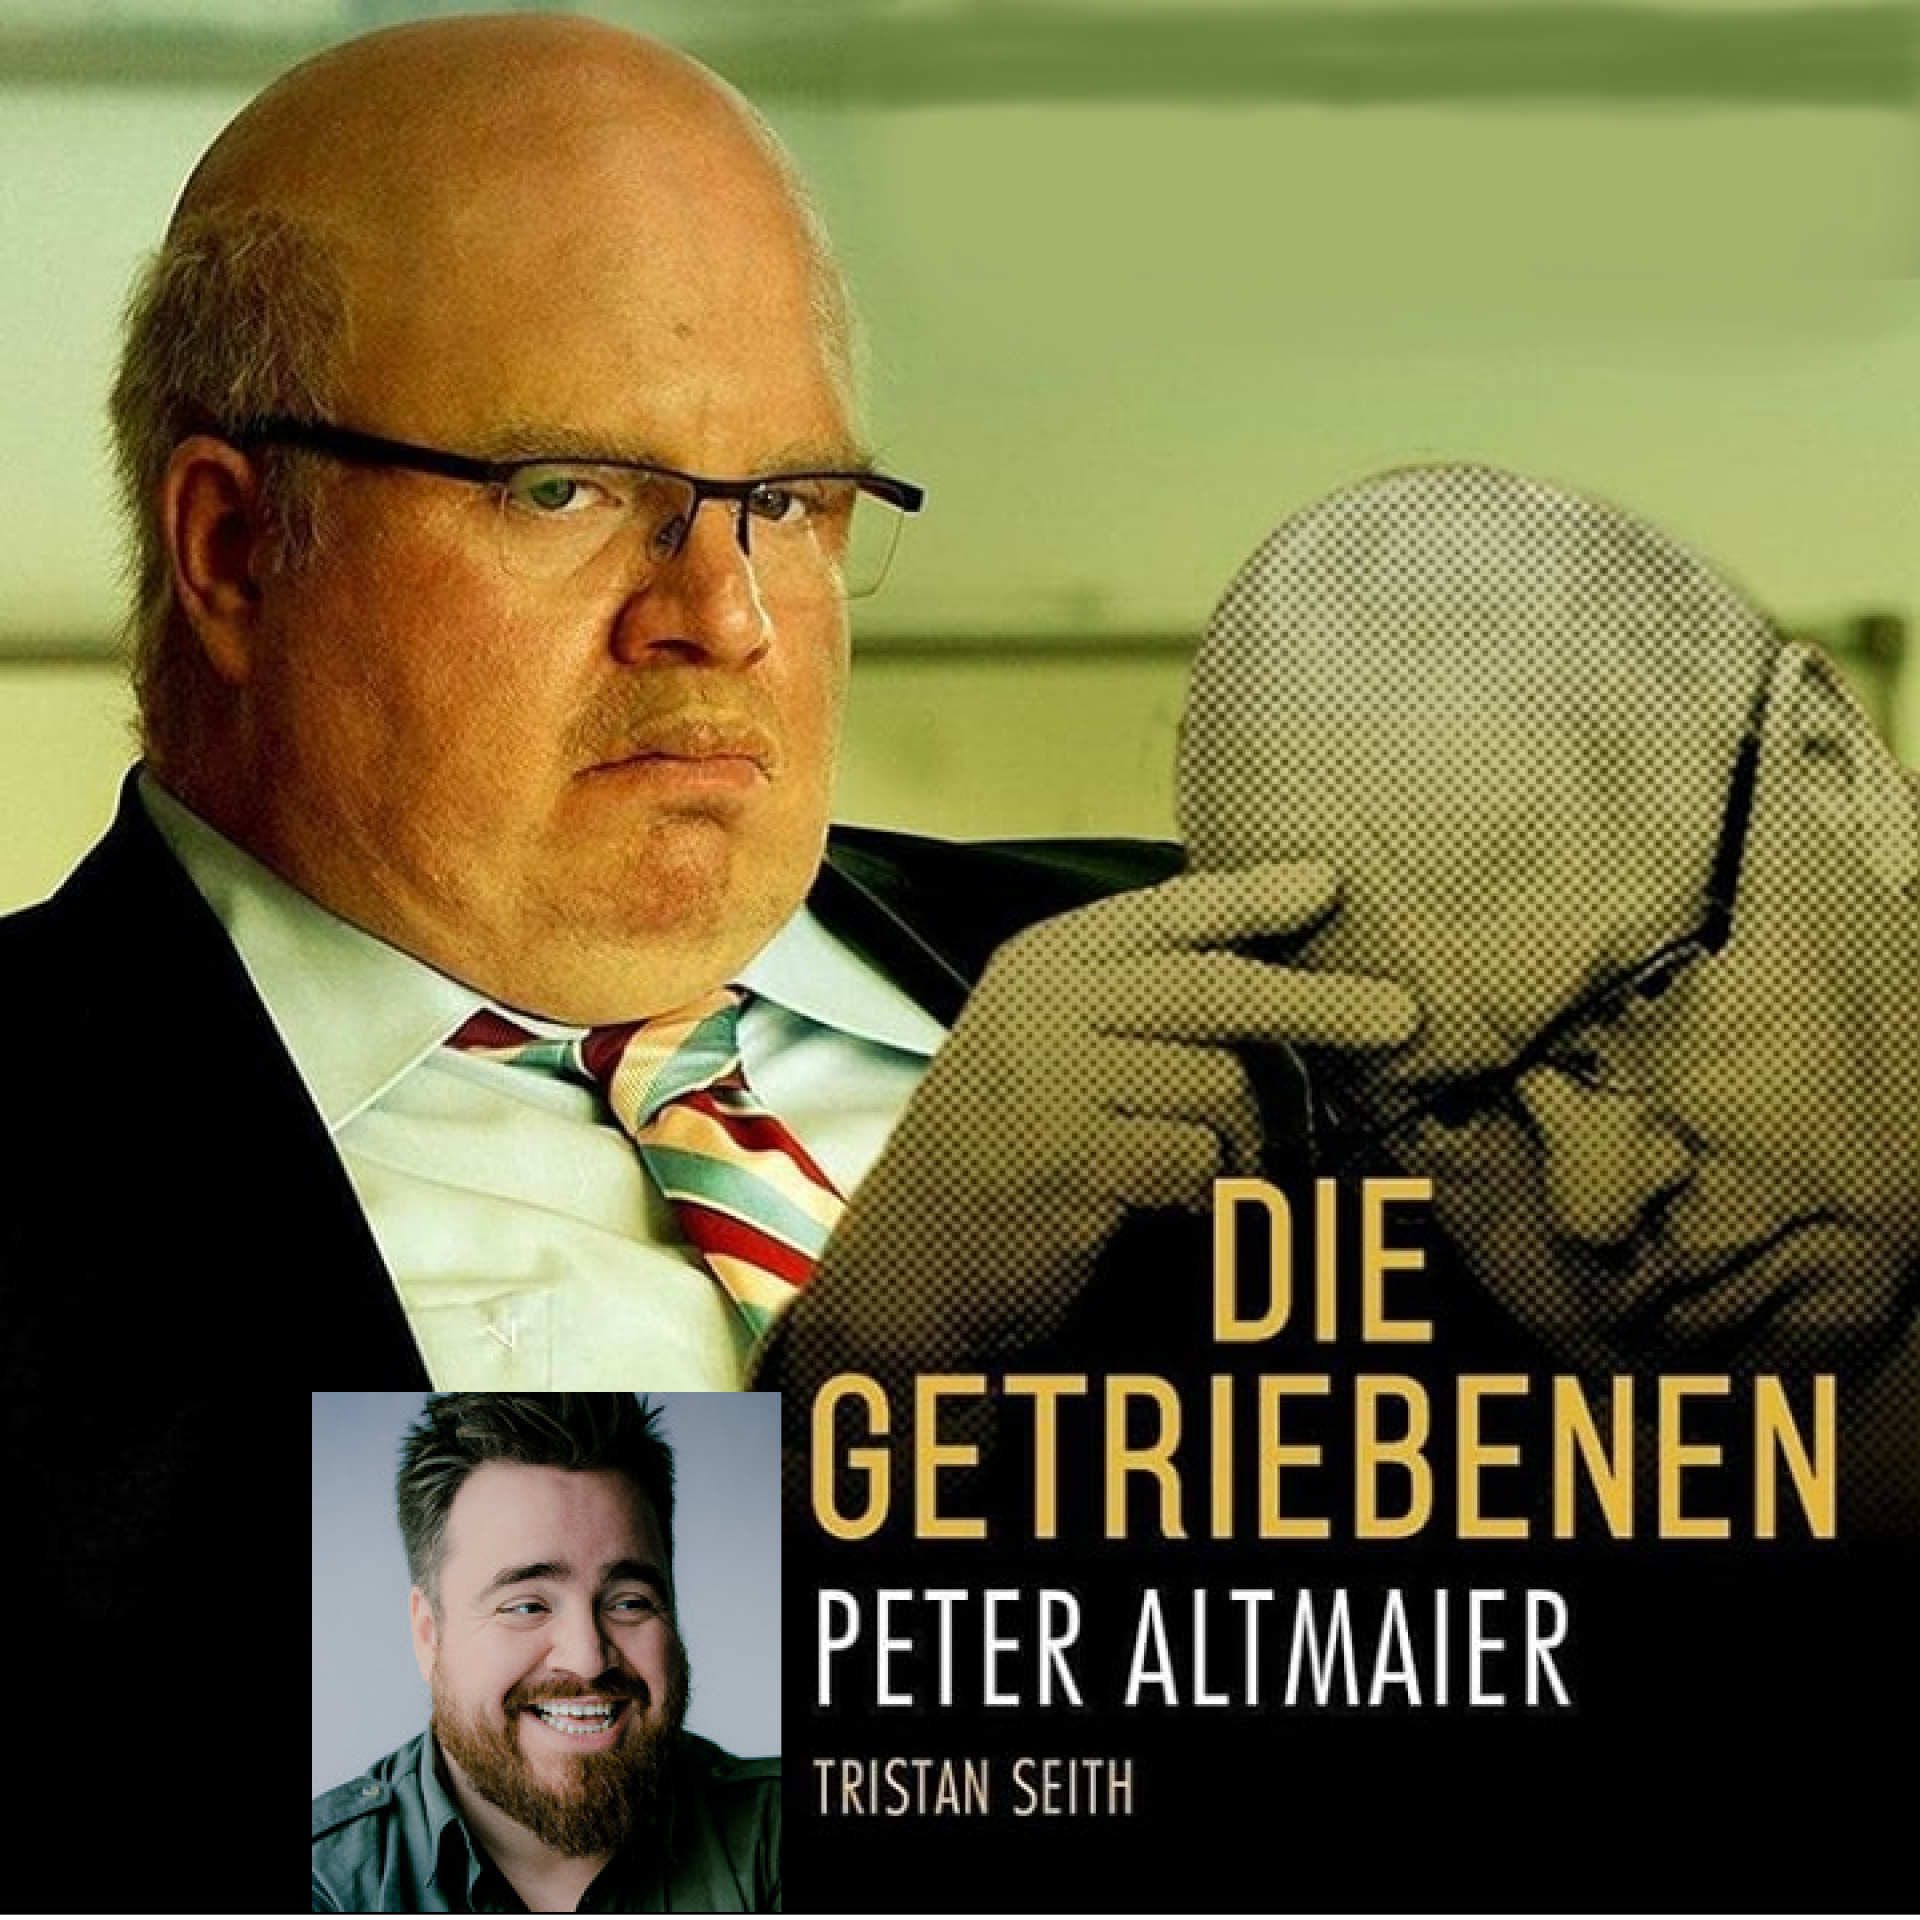 Abbildung von Tristan Seith als Peter Altmaier im Film Die Getriebenen